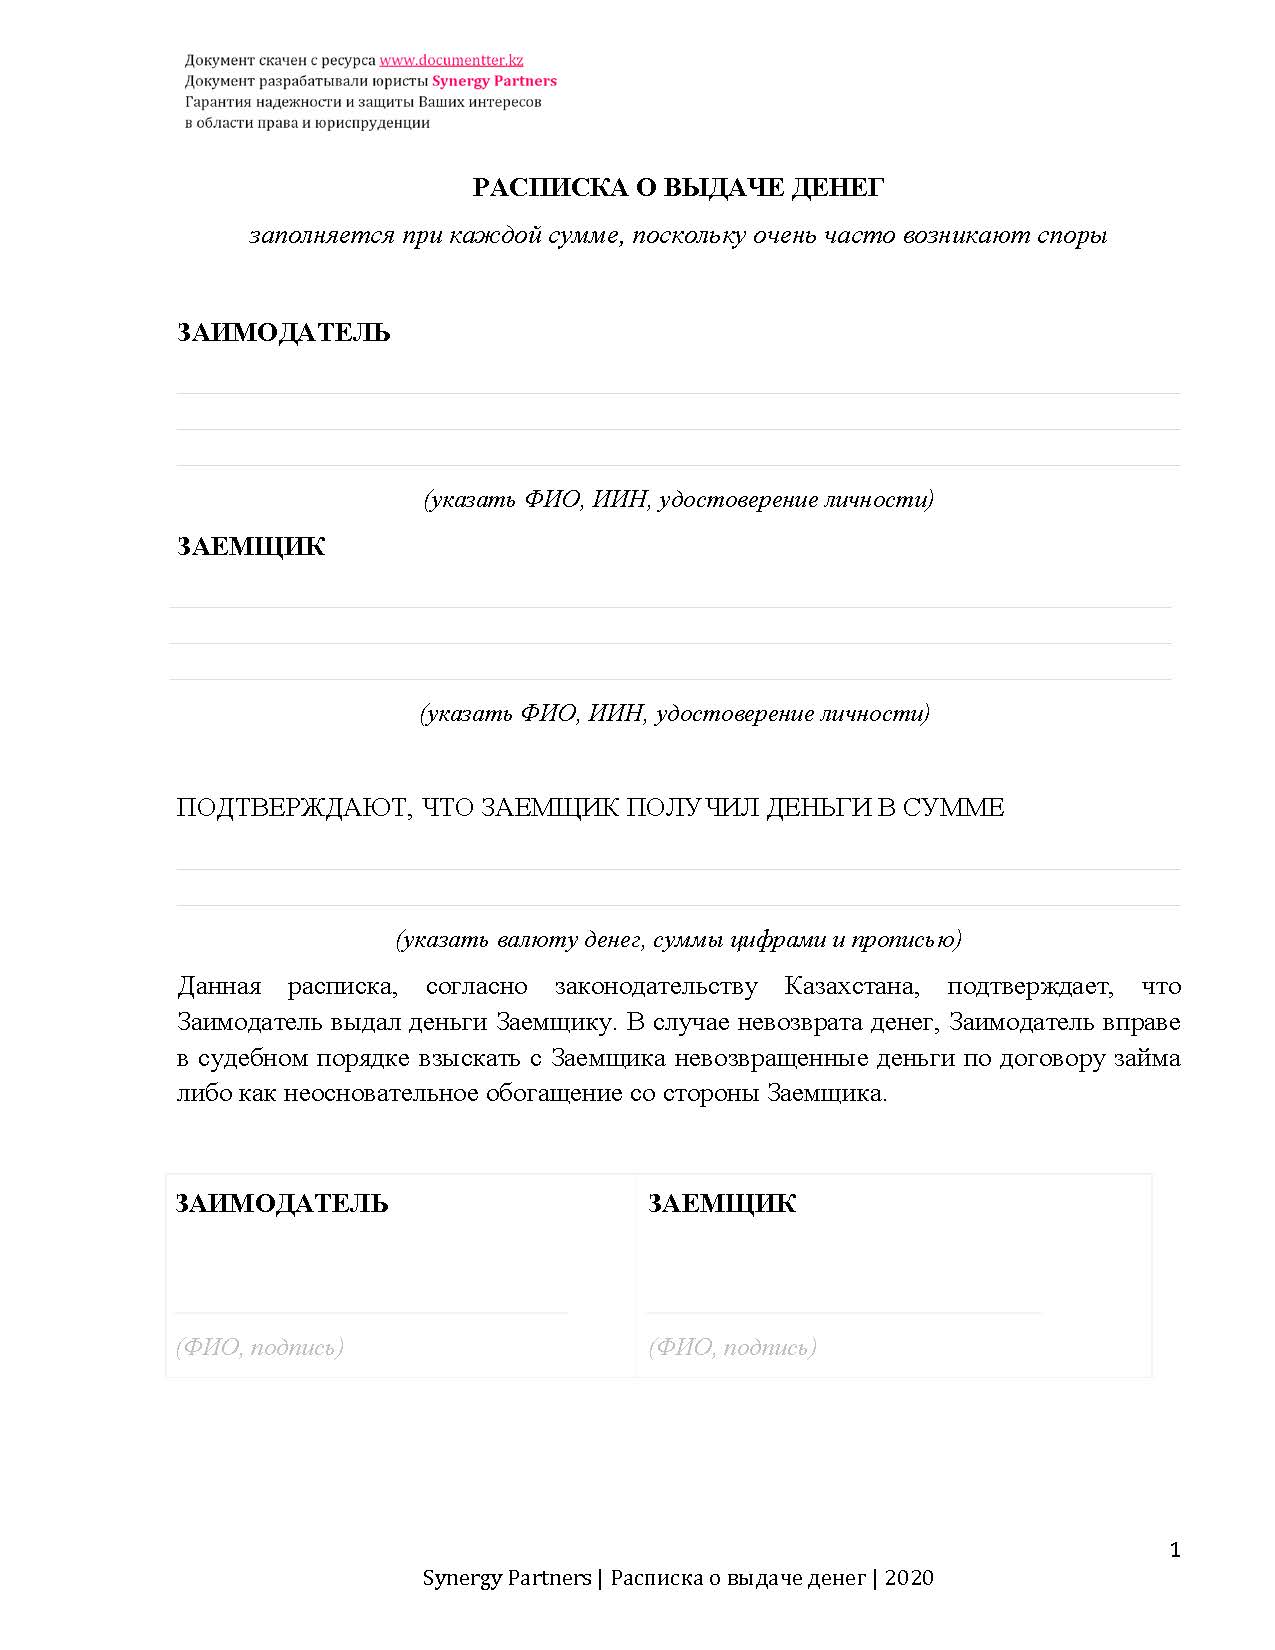 Расписка о выдаче займа 6 | documentter.kz в Казахстане 